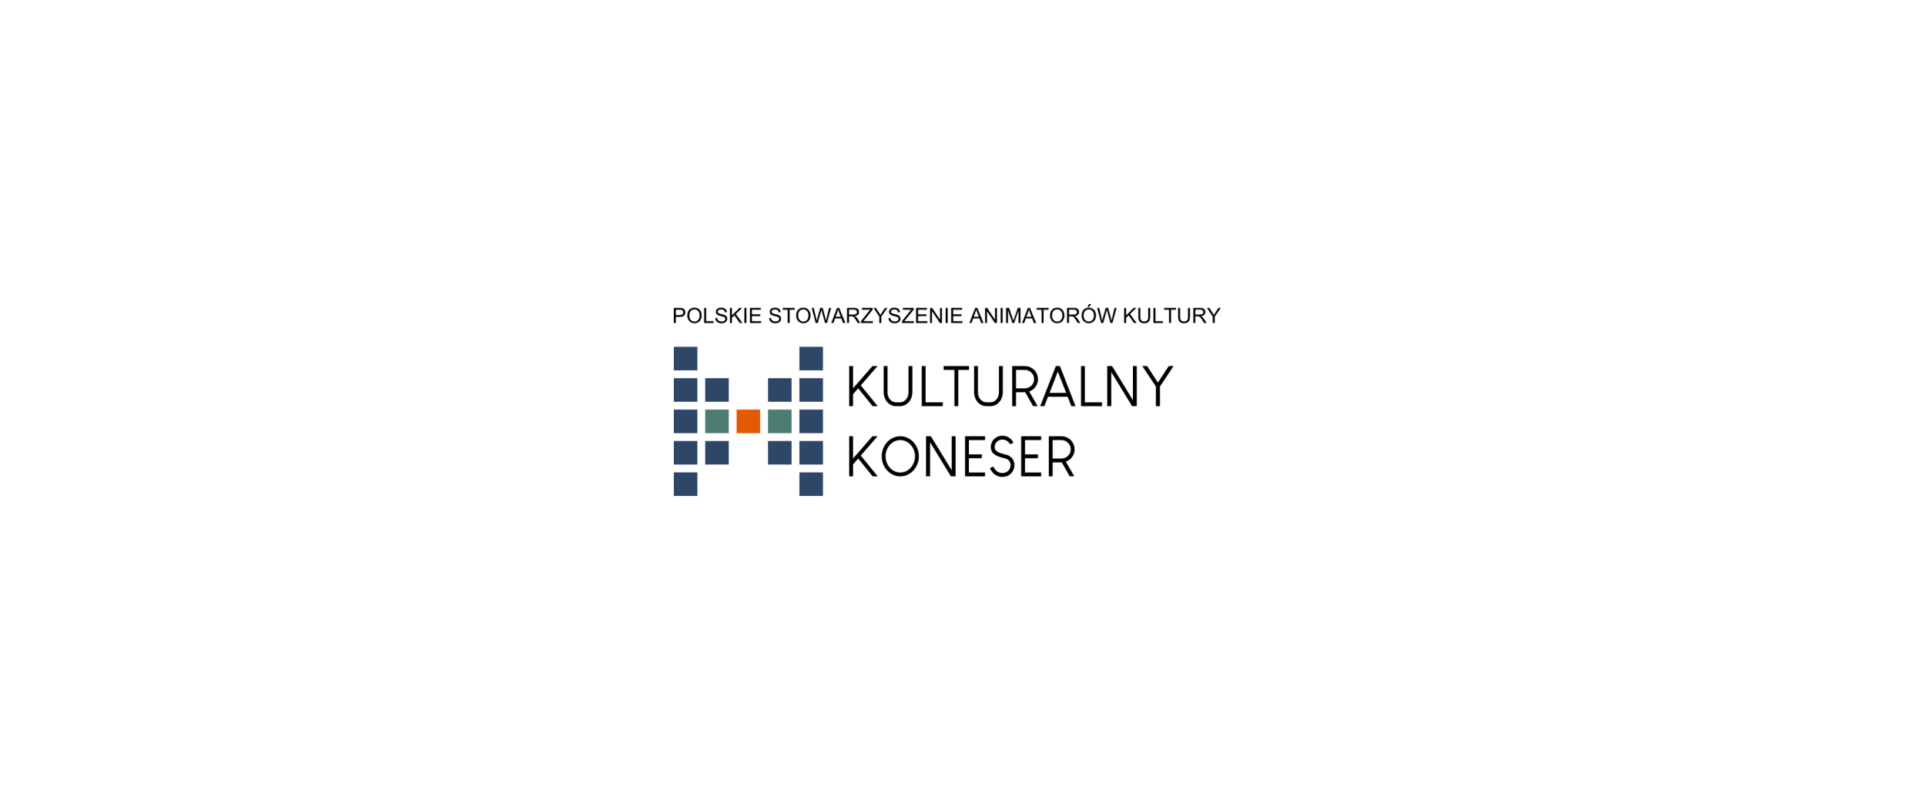 Polskie Stowarzyszenie Animatorów Kultury „Kulturalny Koneser” w prasie